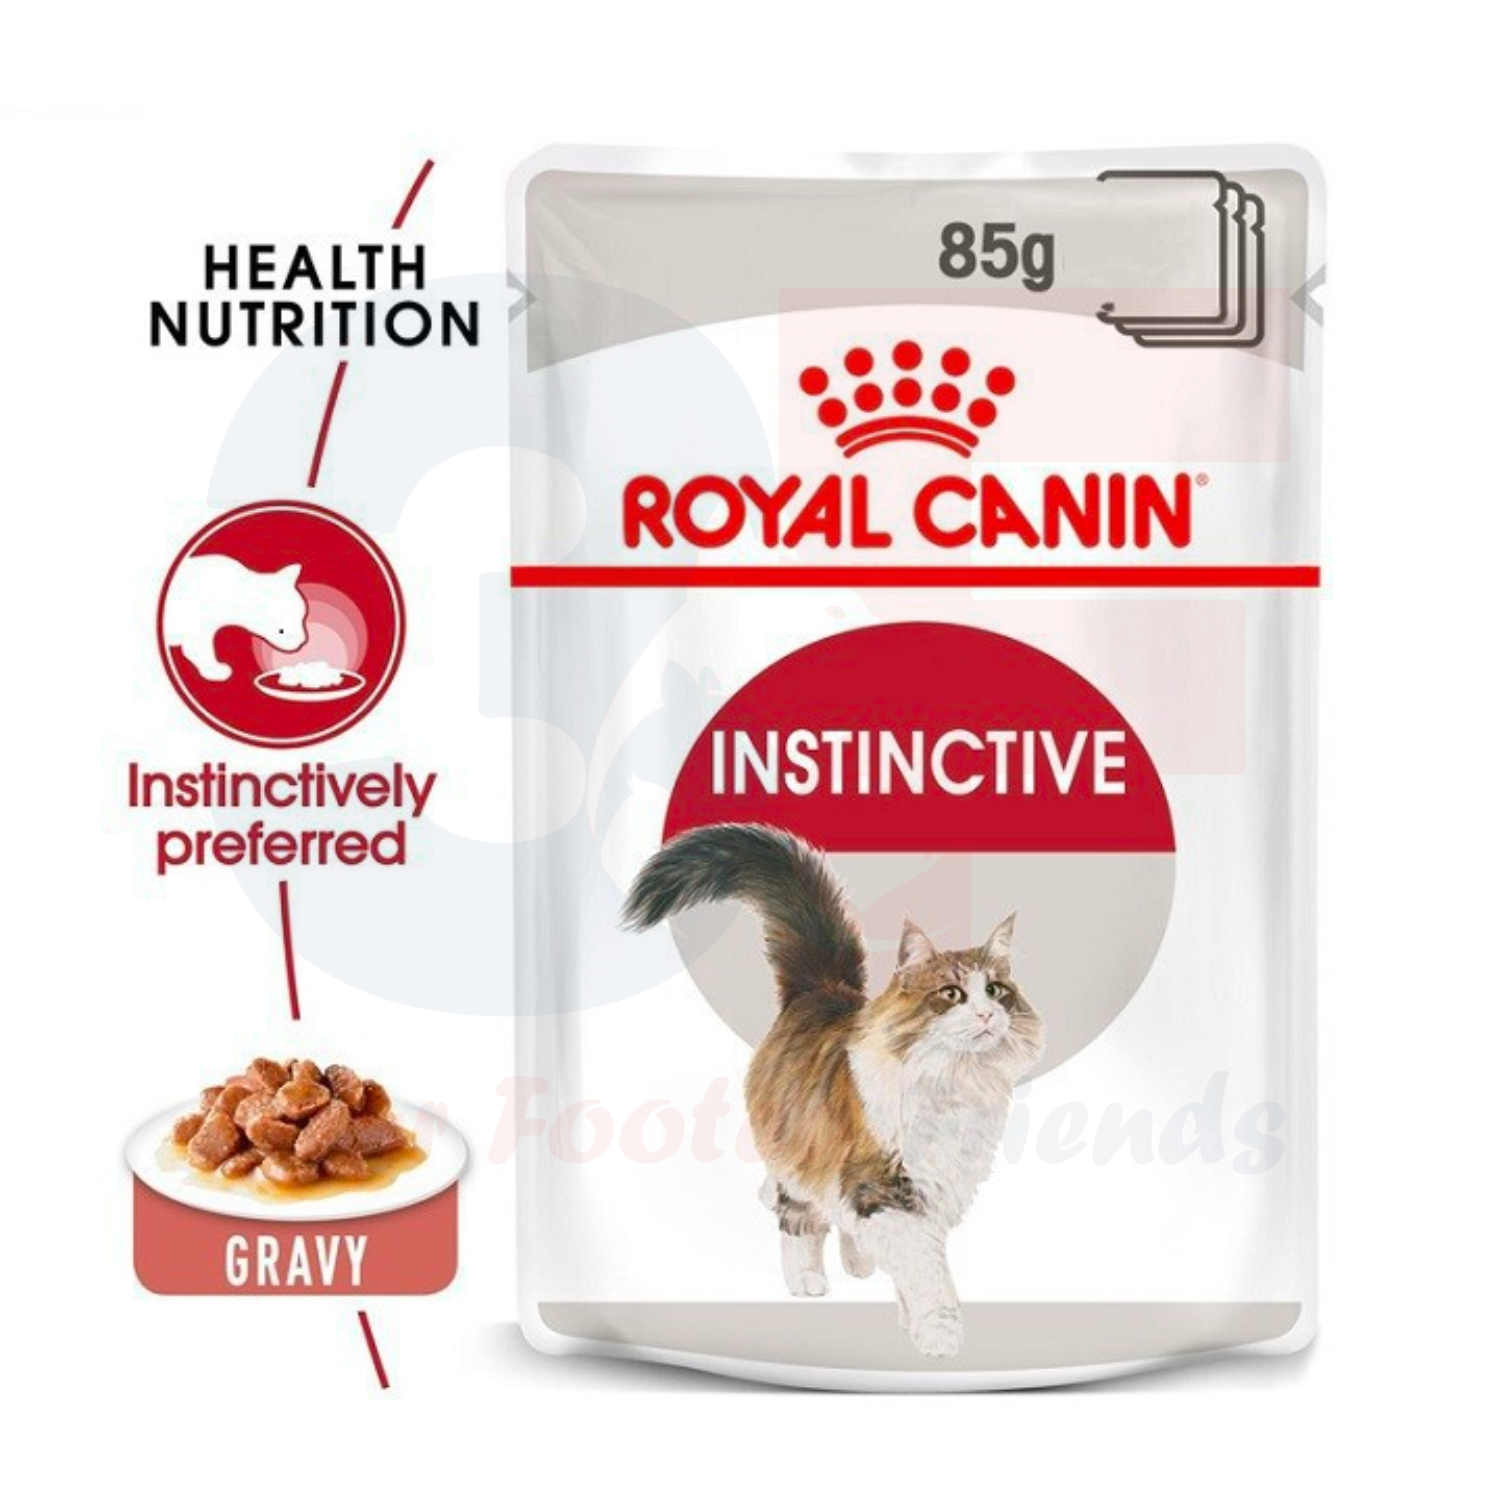 Pate Thức Ăn Ướt Dành Cho Mèo Trưởng Thành Royal Canin Instinctive - Gói 85g